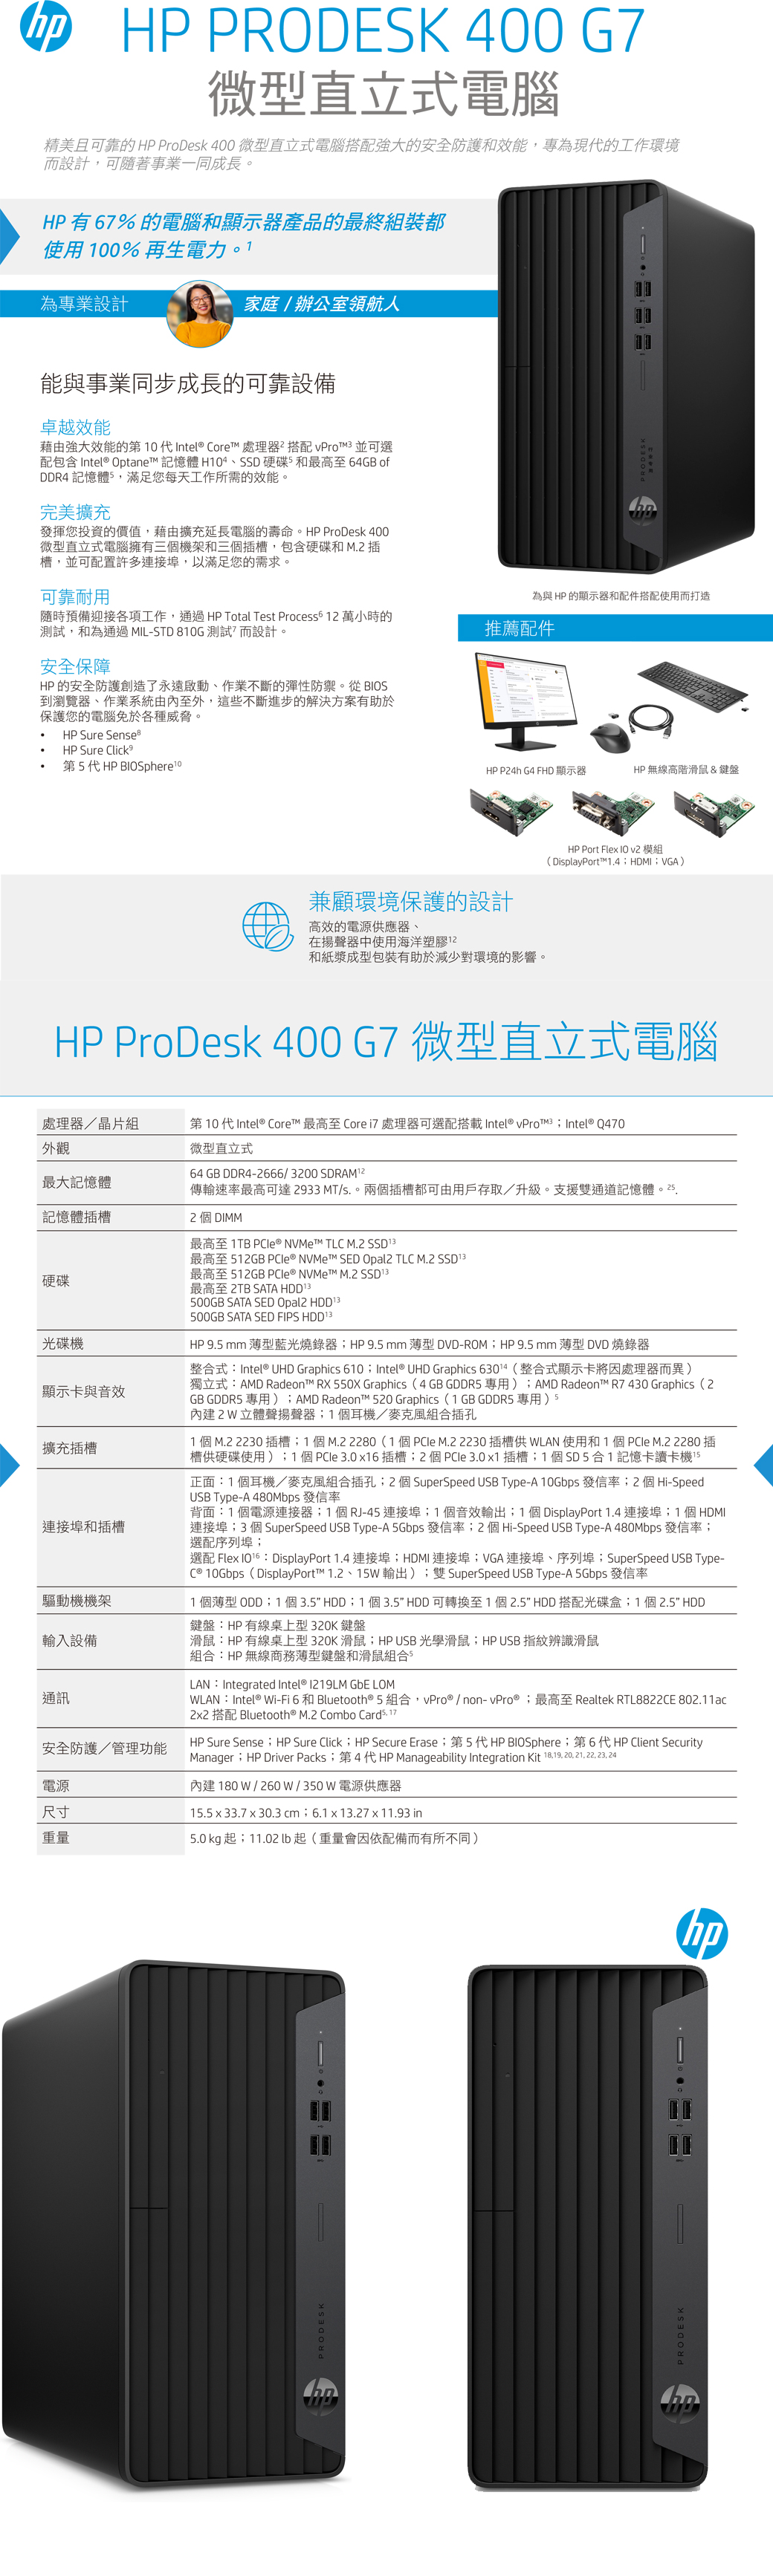 商用)HP 400G7 MT(i3-10100/8GB/1TB+256G SSD/W10P) - PChome 商店街